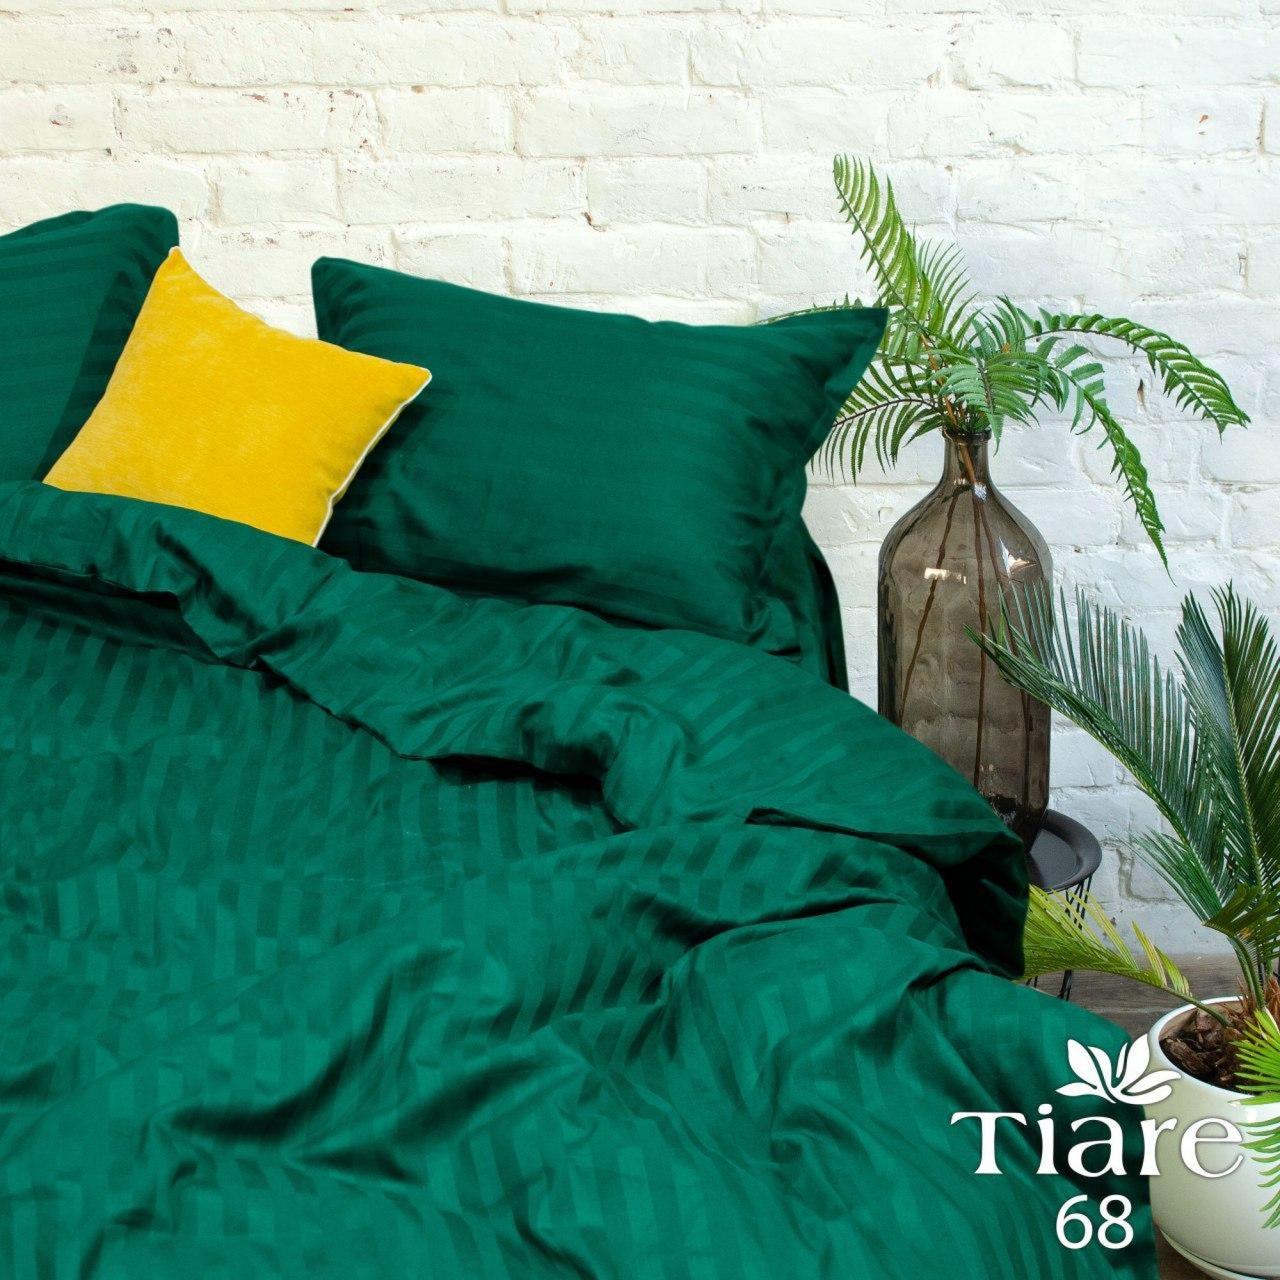 

Комплект постельного белья Viluta Tiare Сатин Страйп № 68 Зеленый Полуторный, Зелёный